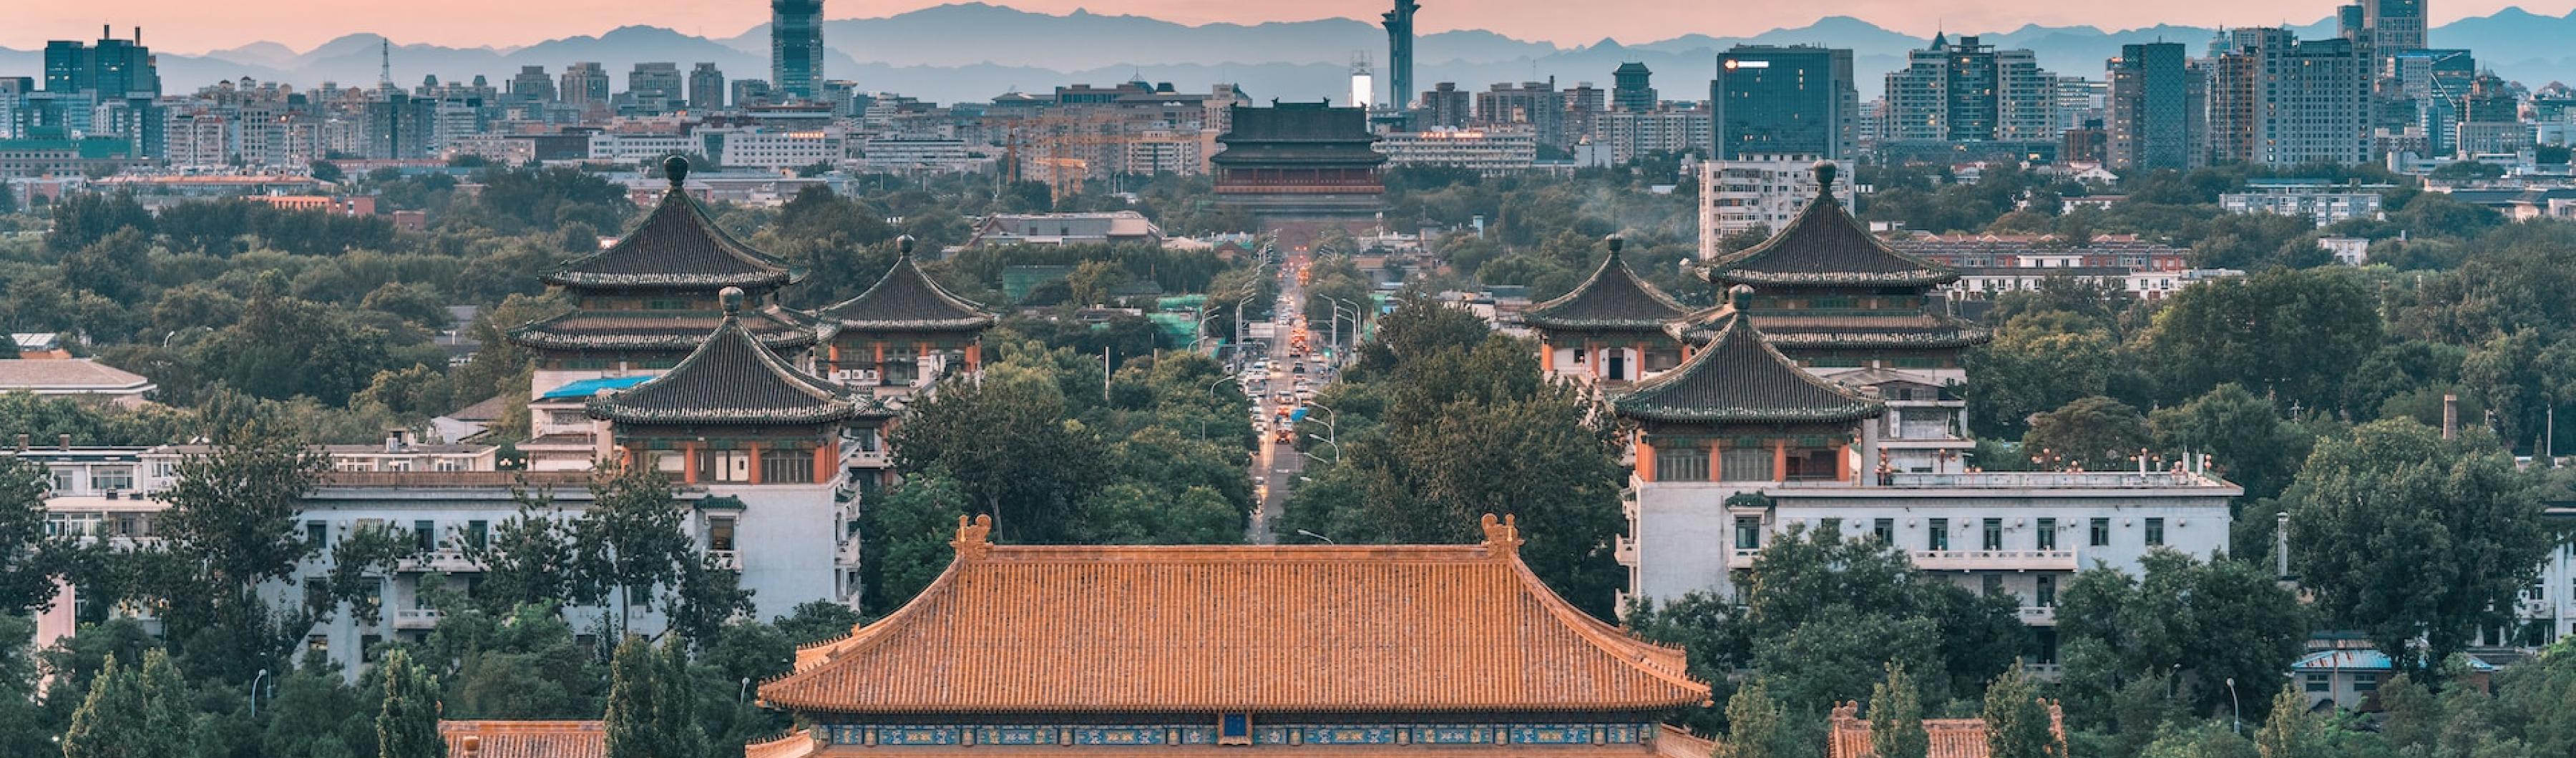 Uma vista do horizonte de Pequim com árvores